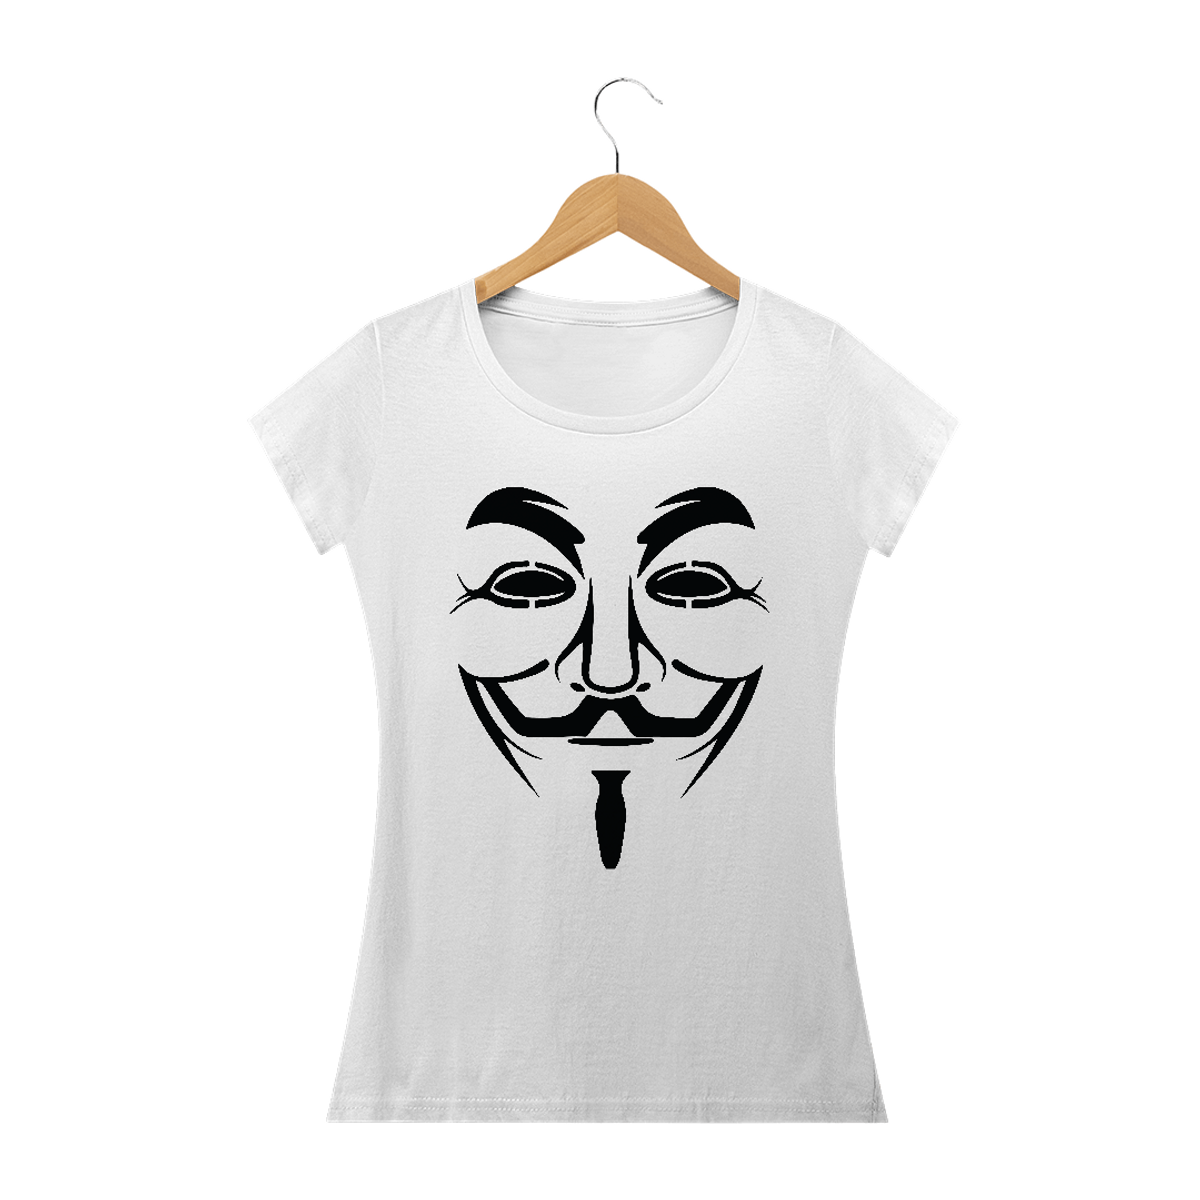 Nome do produto: Camiseta Feminina V de Vingança